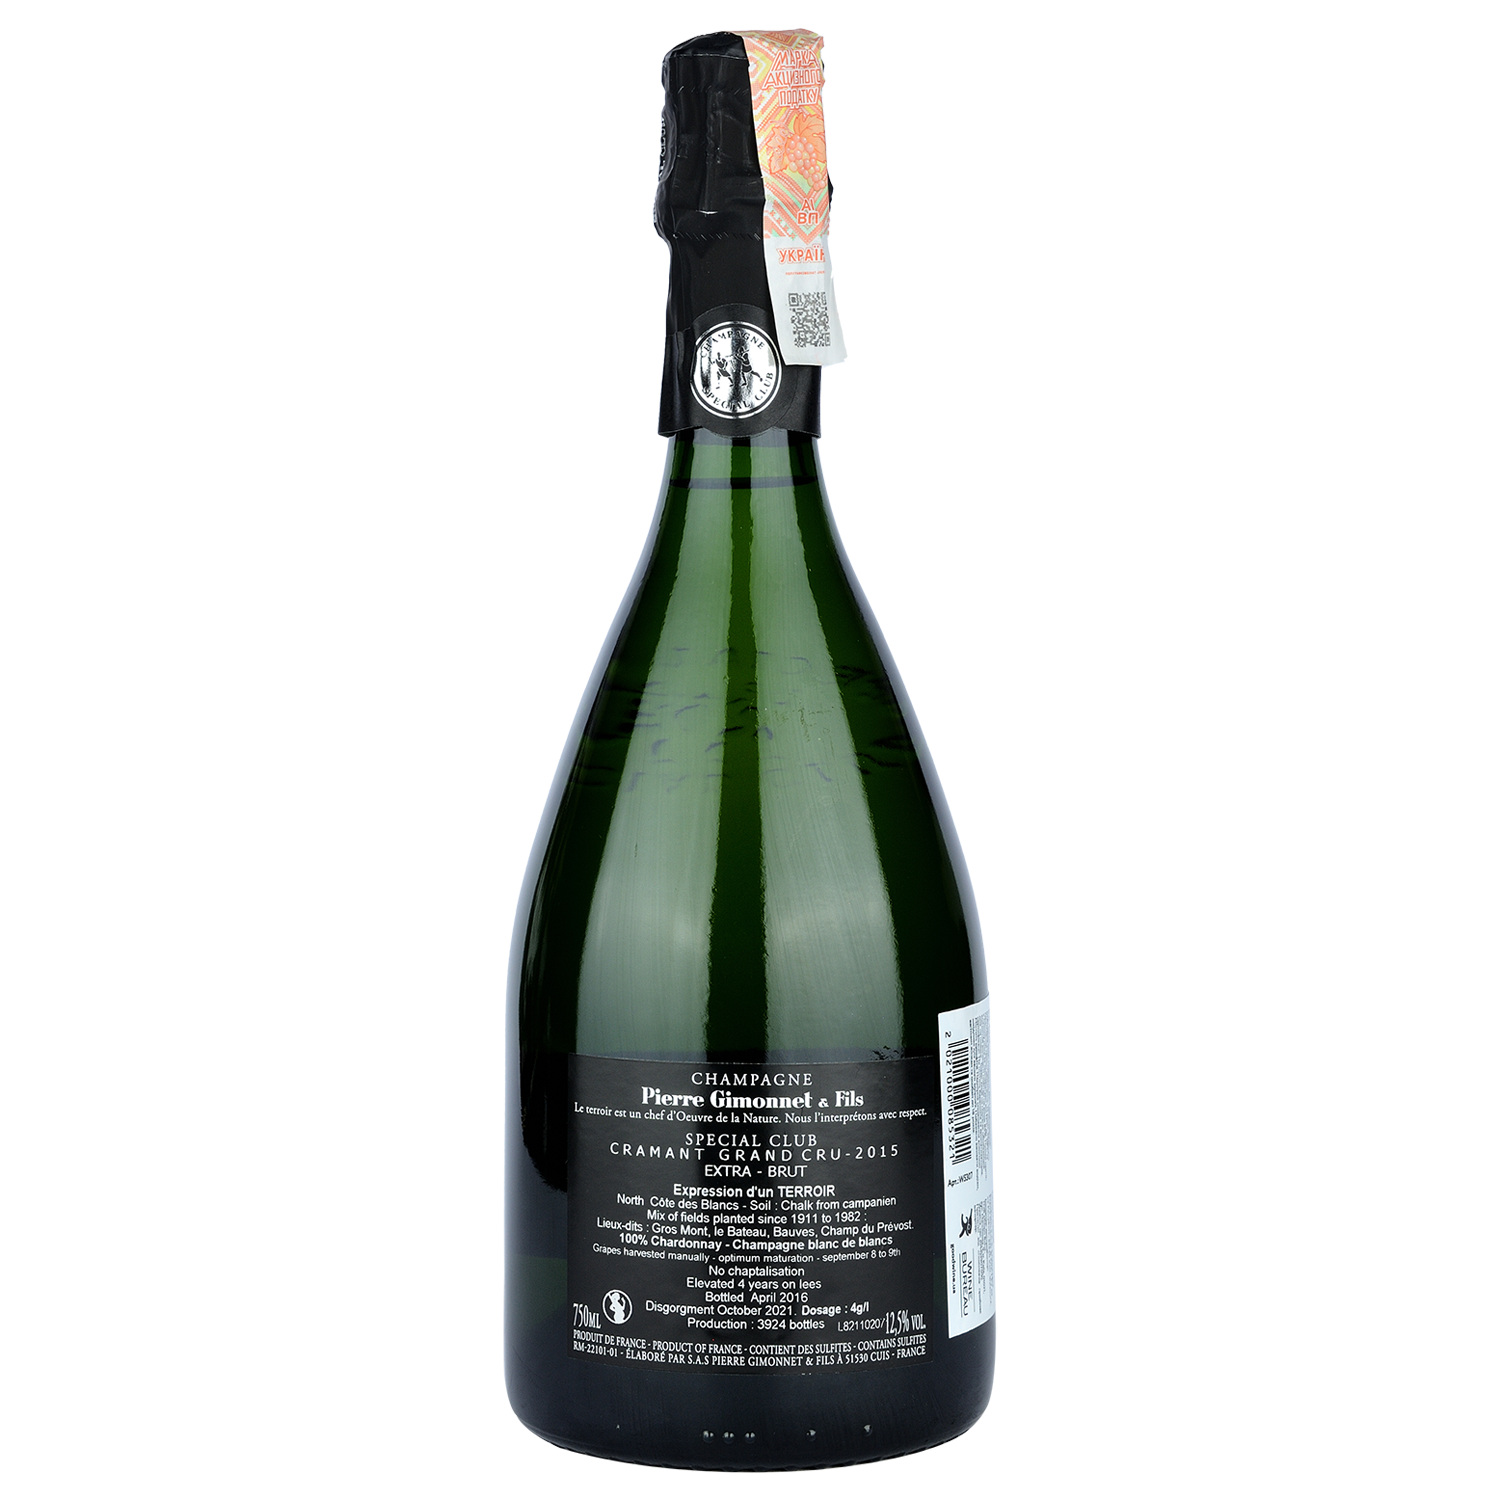 Шампанское Pierre Gimonnet&Fils Special Club Cramant Grand Cru Blancs de Blancs 2015, белое, экстра-брют, 0,75 л (W5307) - фото 2